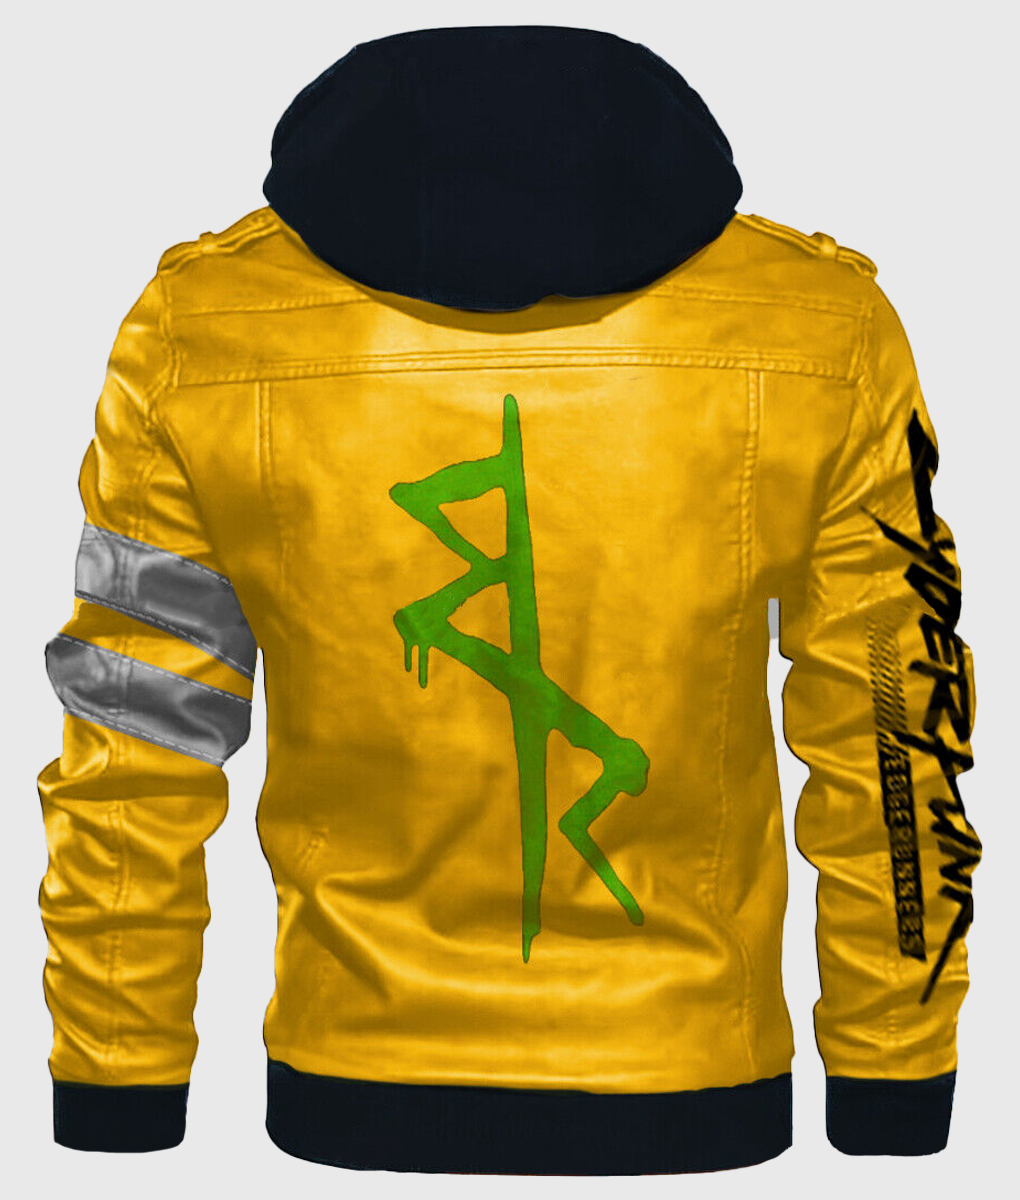 Cyberpunk 2077 Yellow Leather Jacket (2)